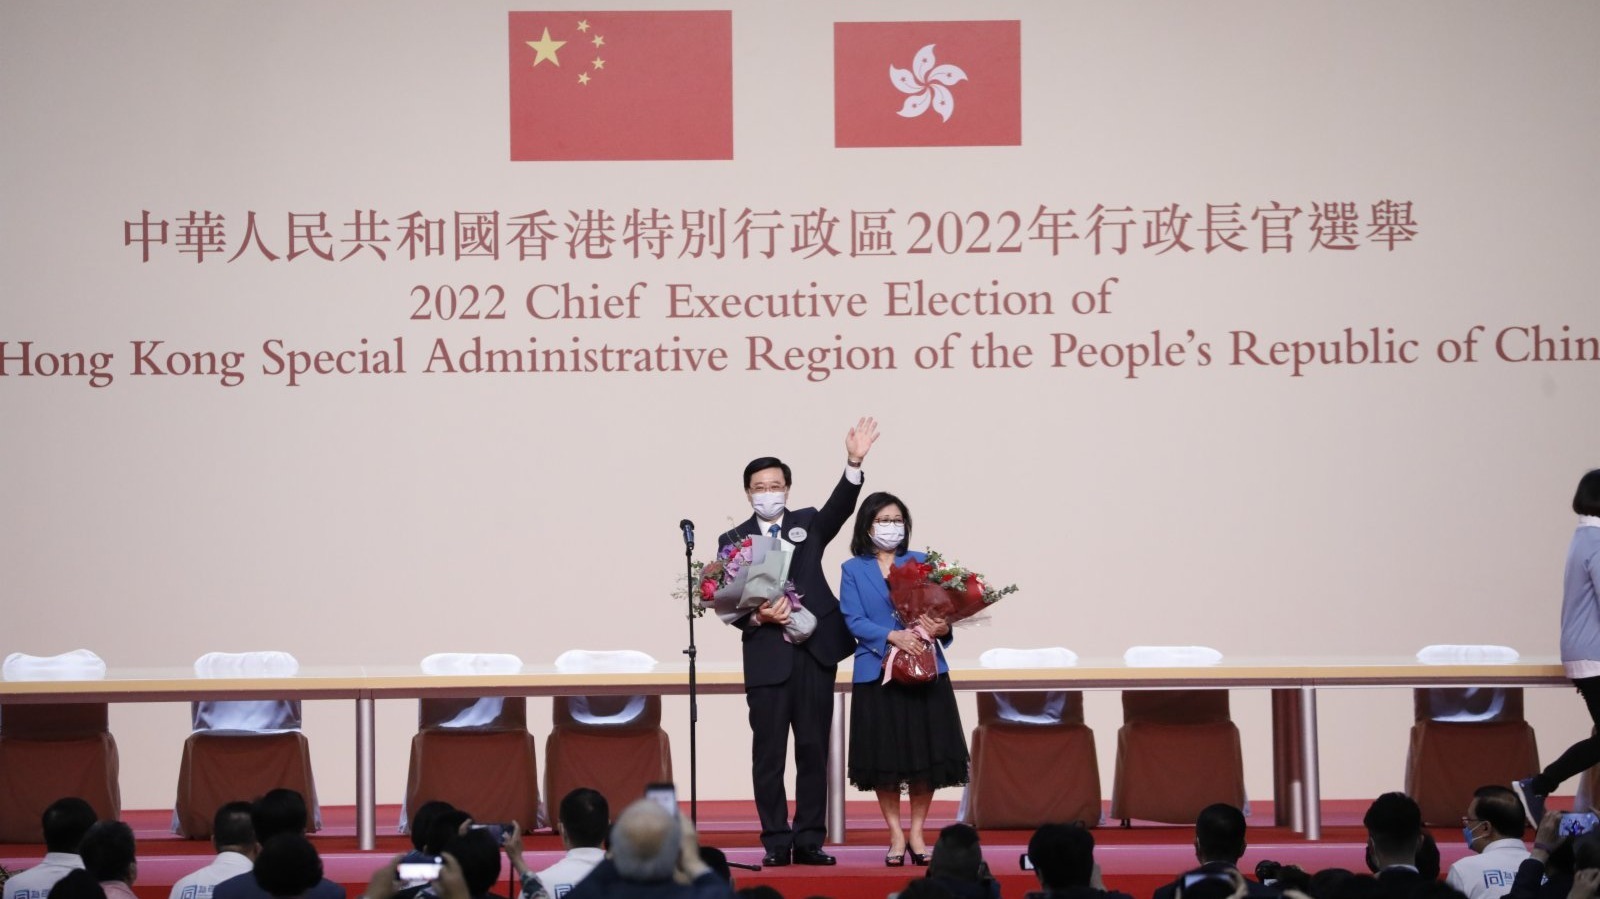 祝賀！李家超高票當選香港特別行政區第六任行政長官人選